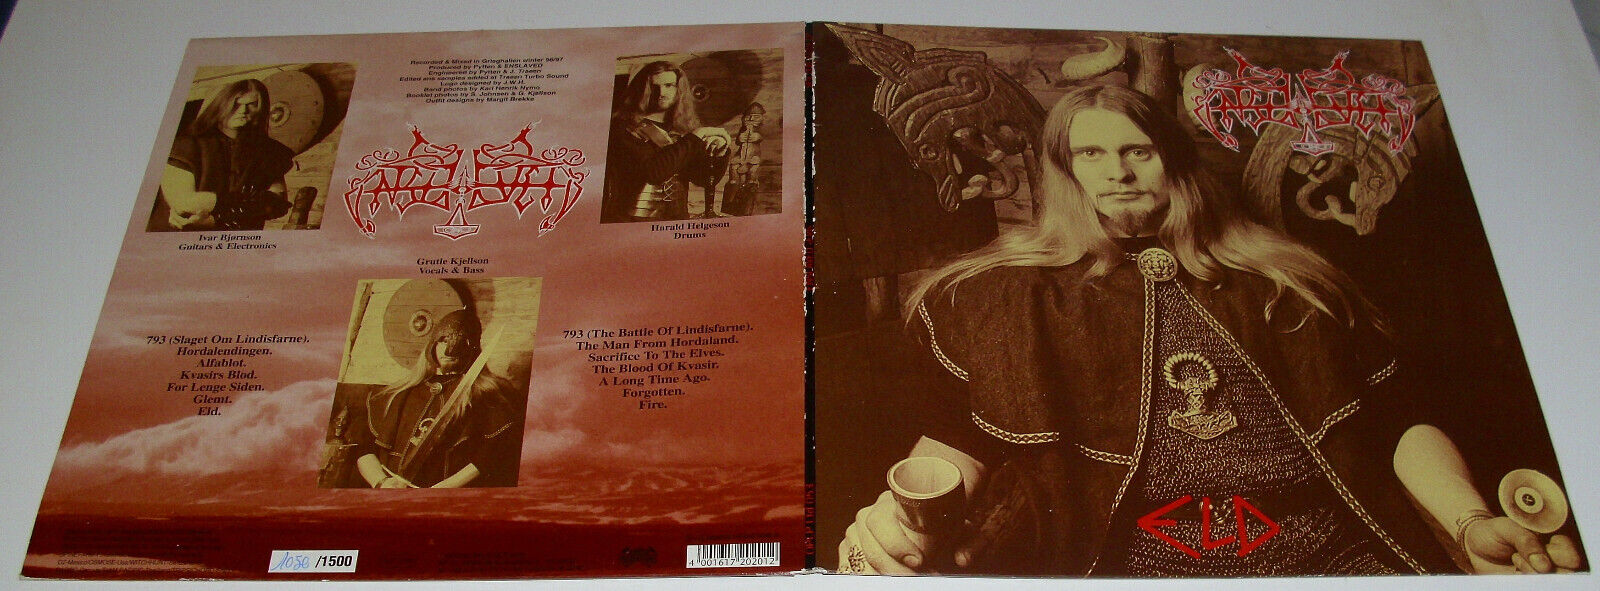 Enslaved     Eld 2-LP 1st Press 1997 Limited Nummeriert      Bathory Emperor  